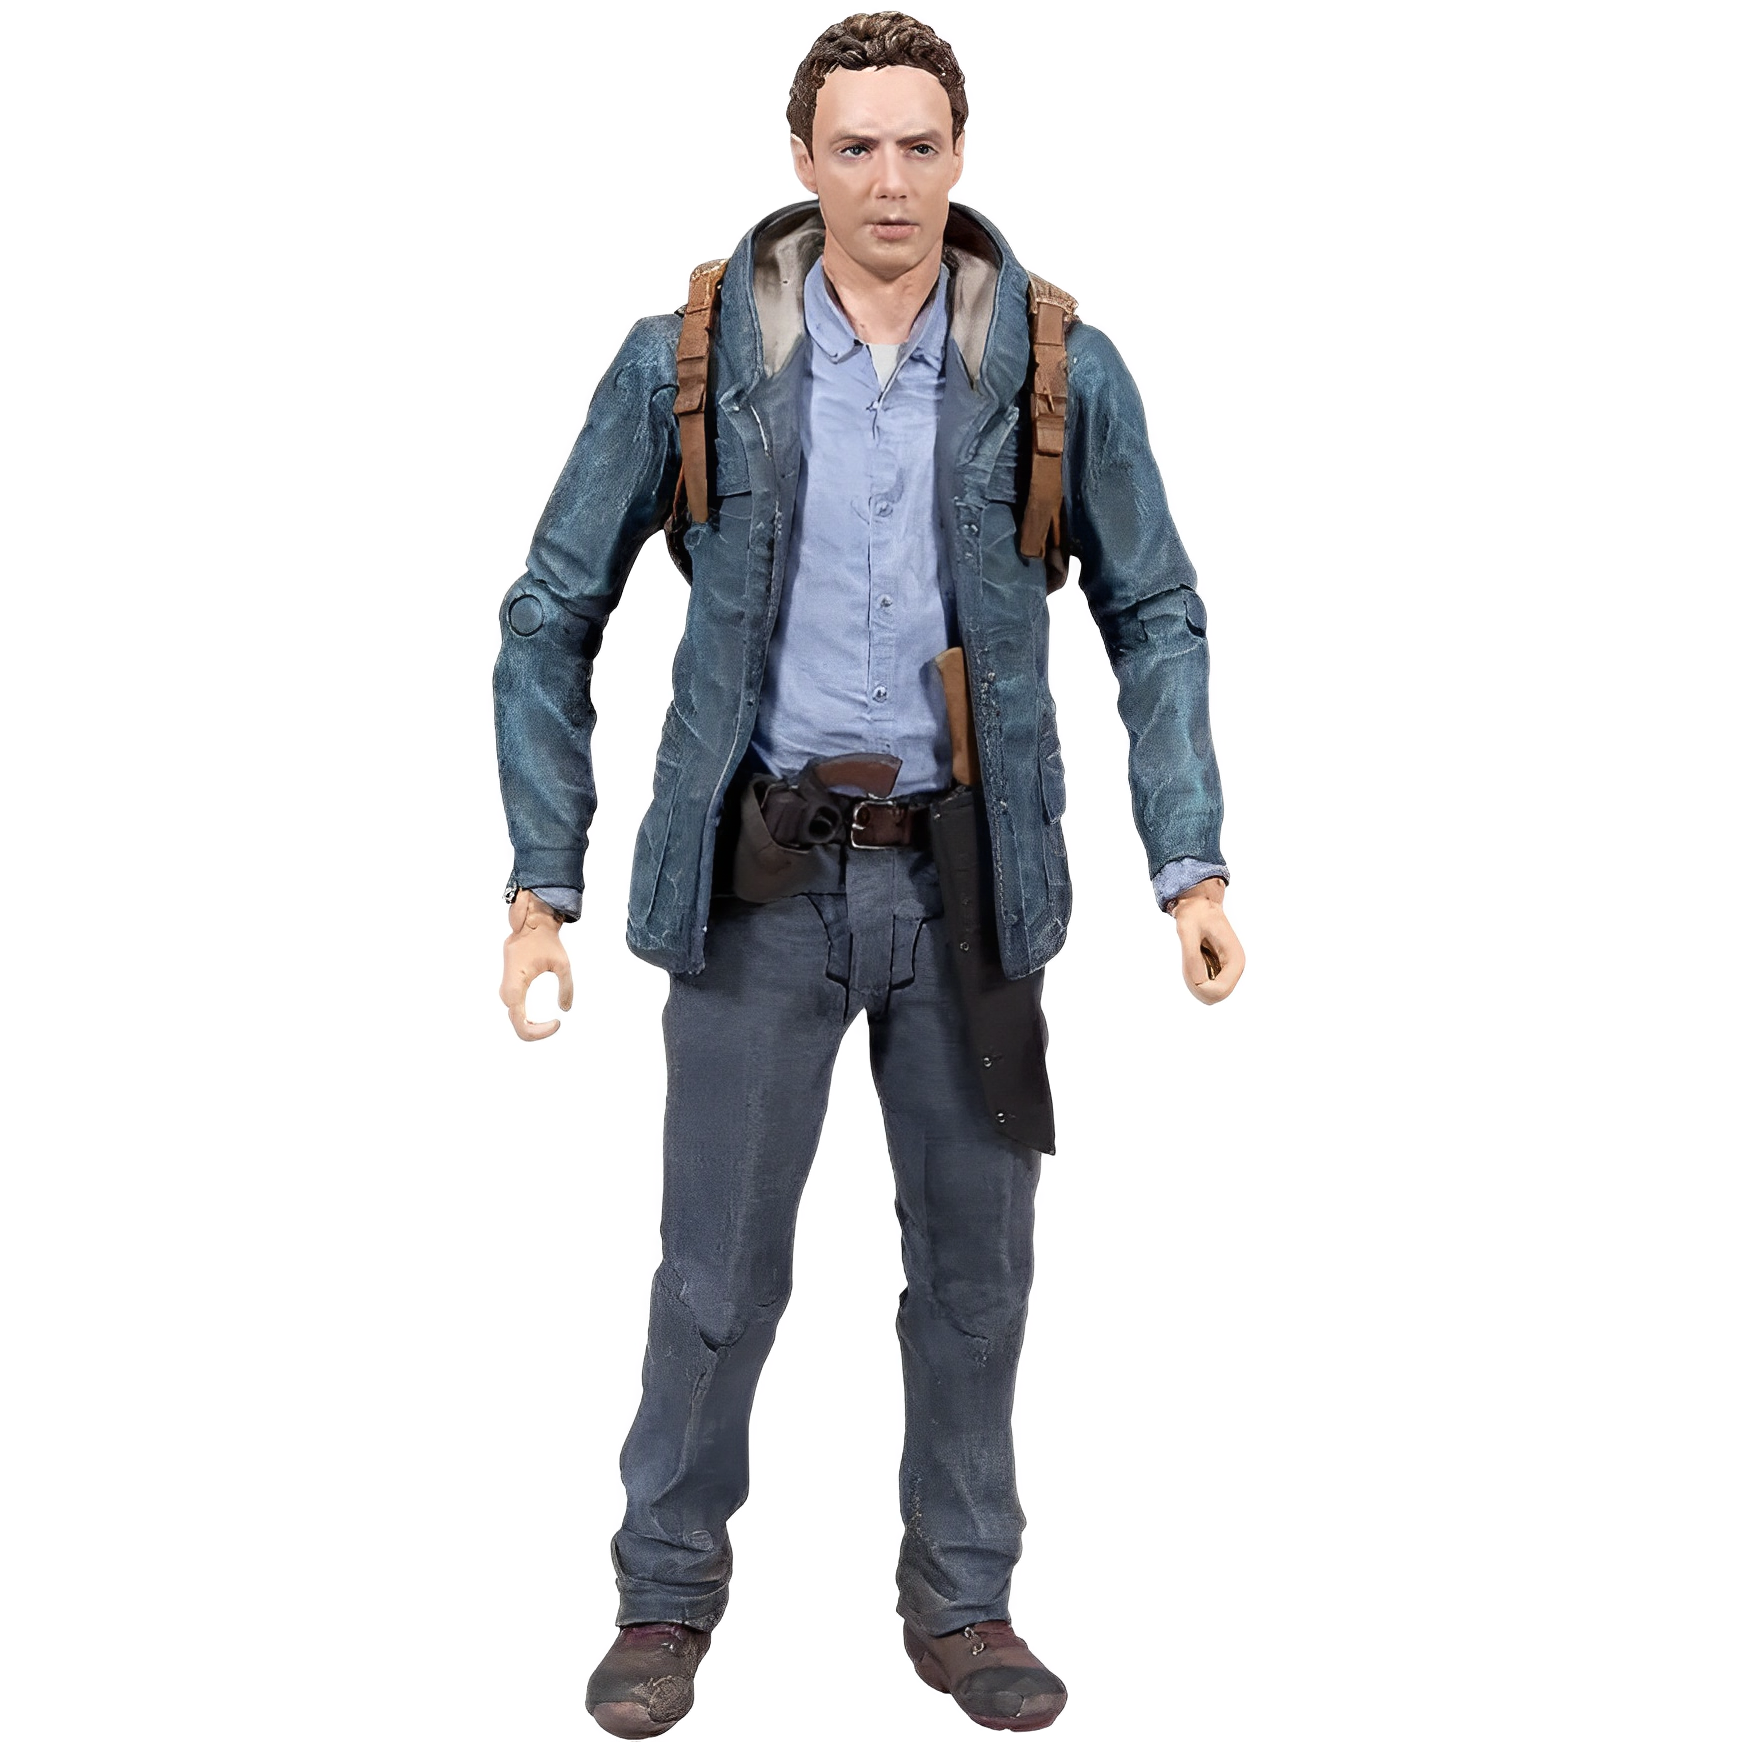 The Walking Dead [Aaron] - Action Figures & Statues